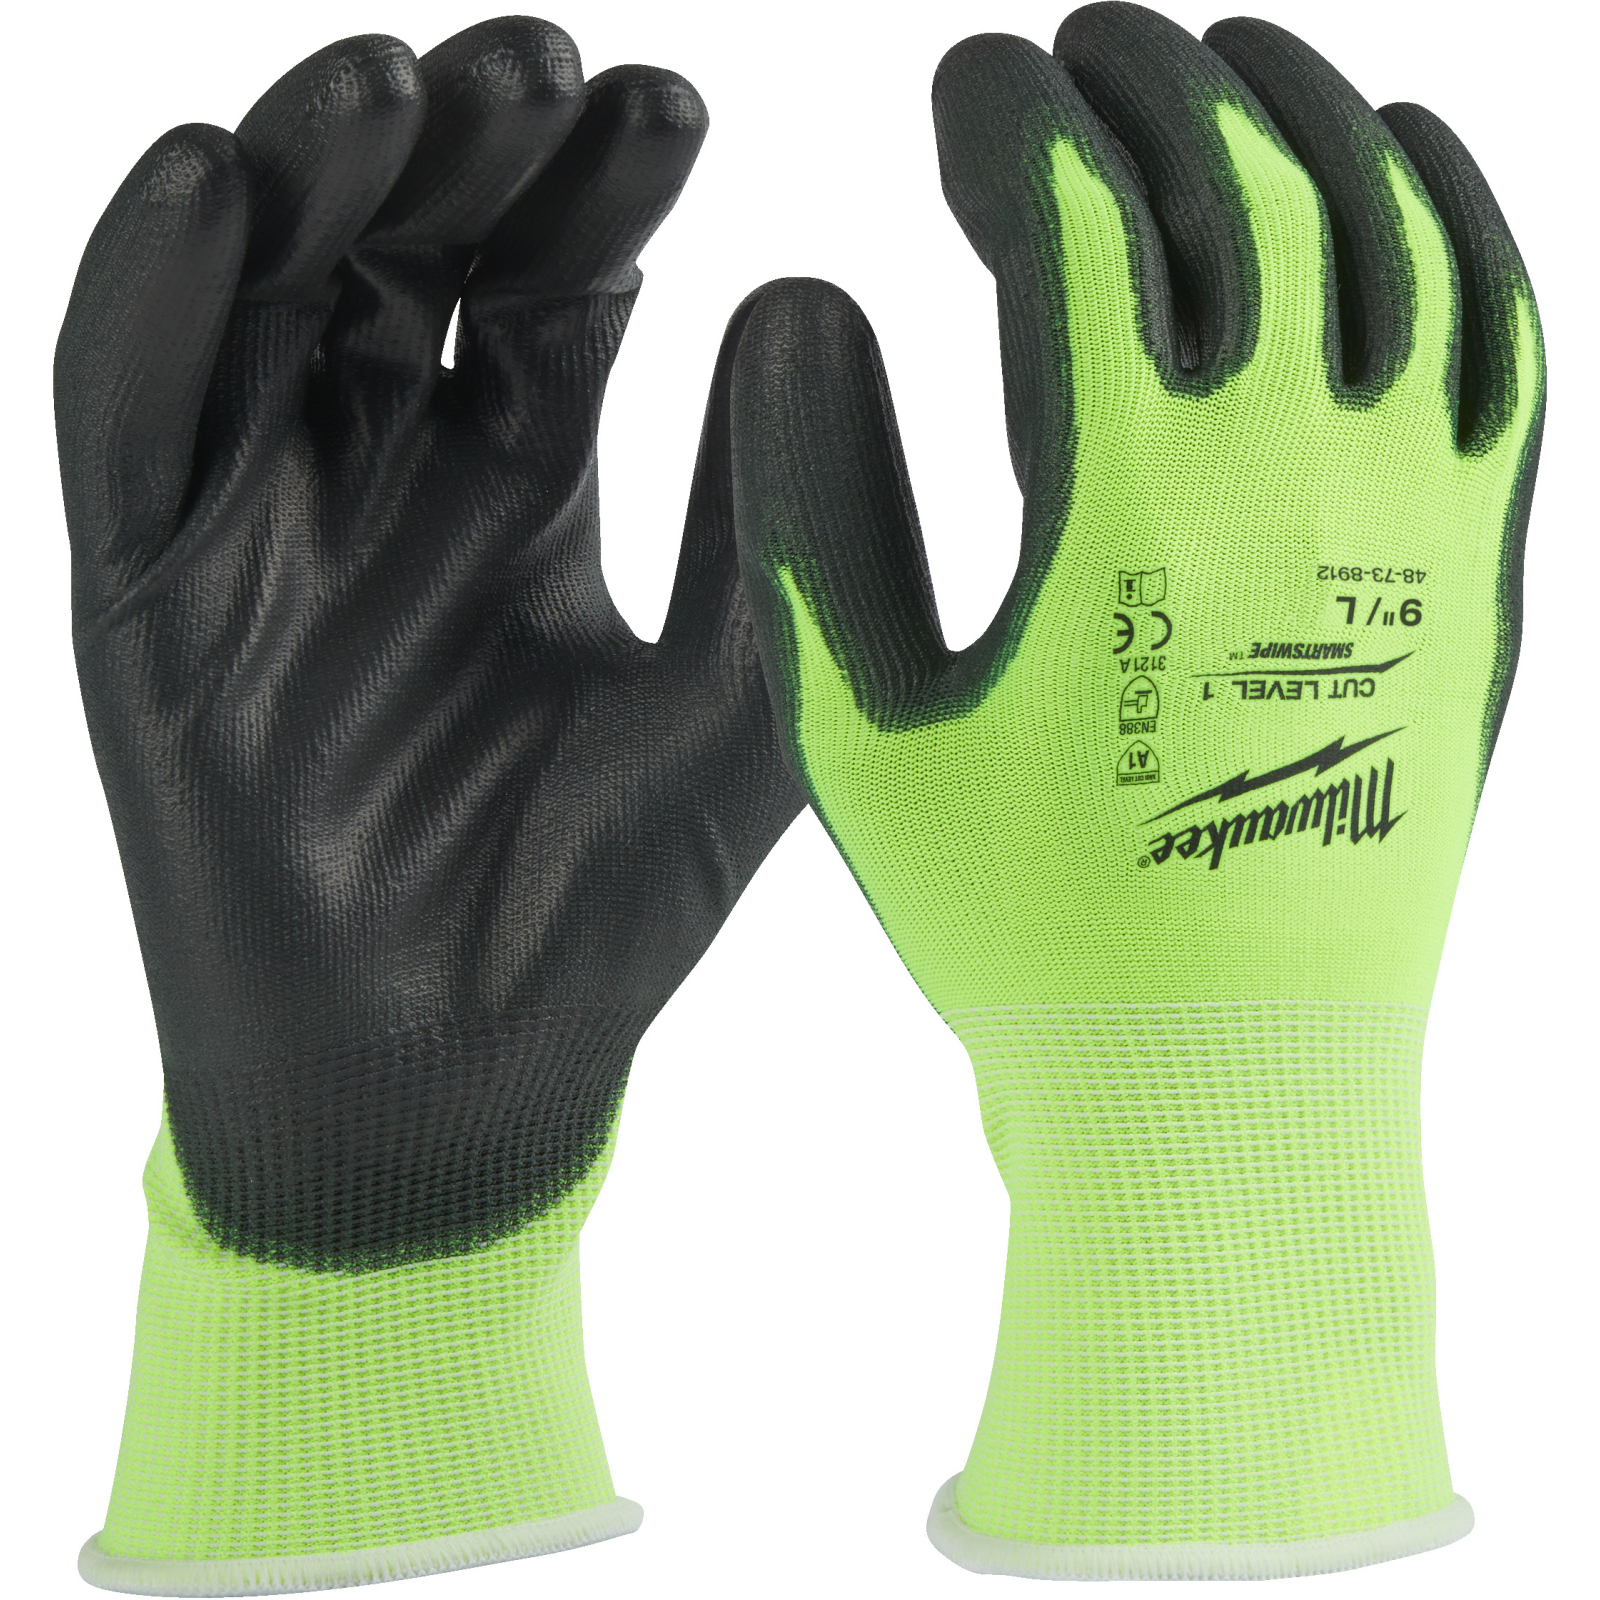 Захисні рукавиці Milwaukee сигнальні з рівнем опору порізам 1, L/9 (4932479918)